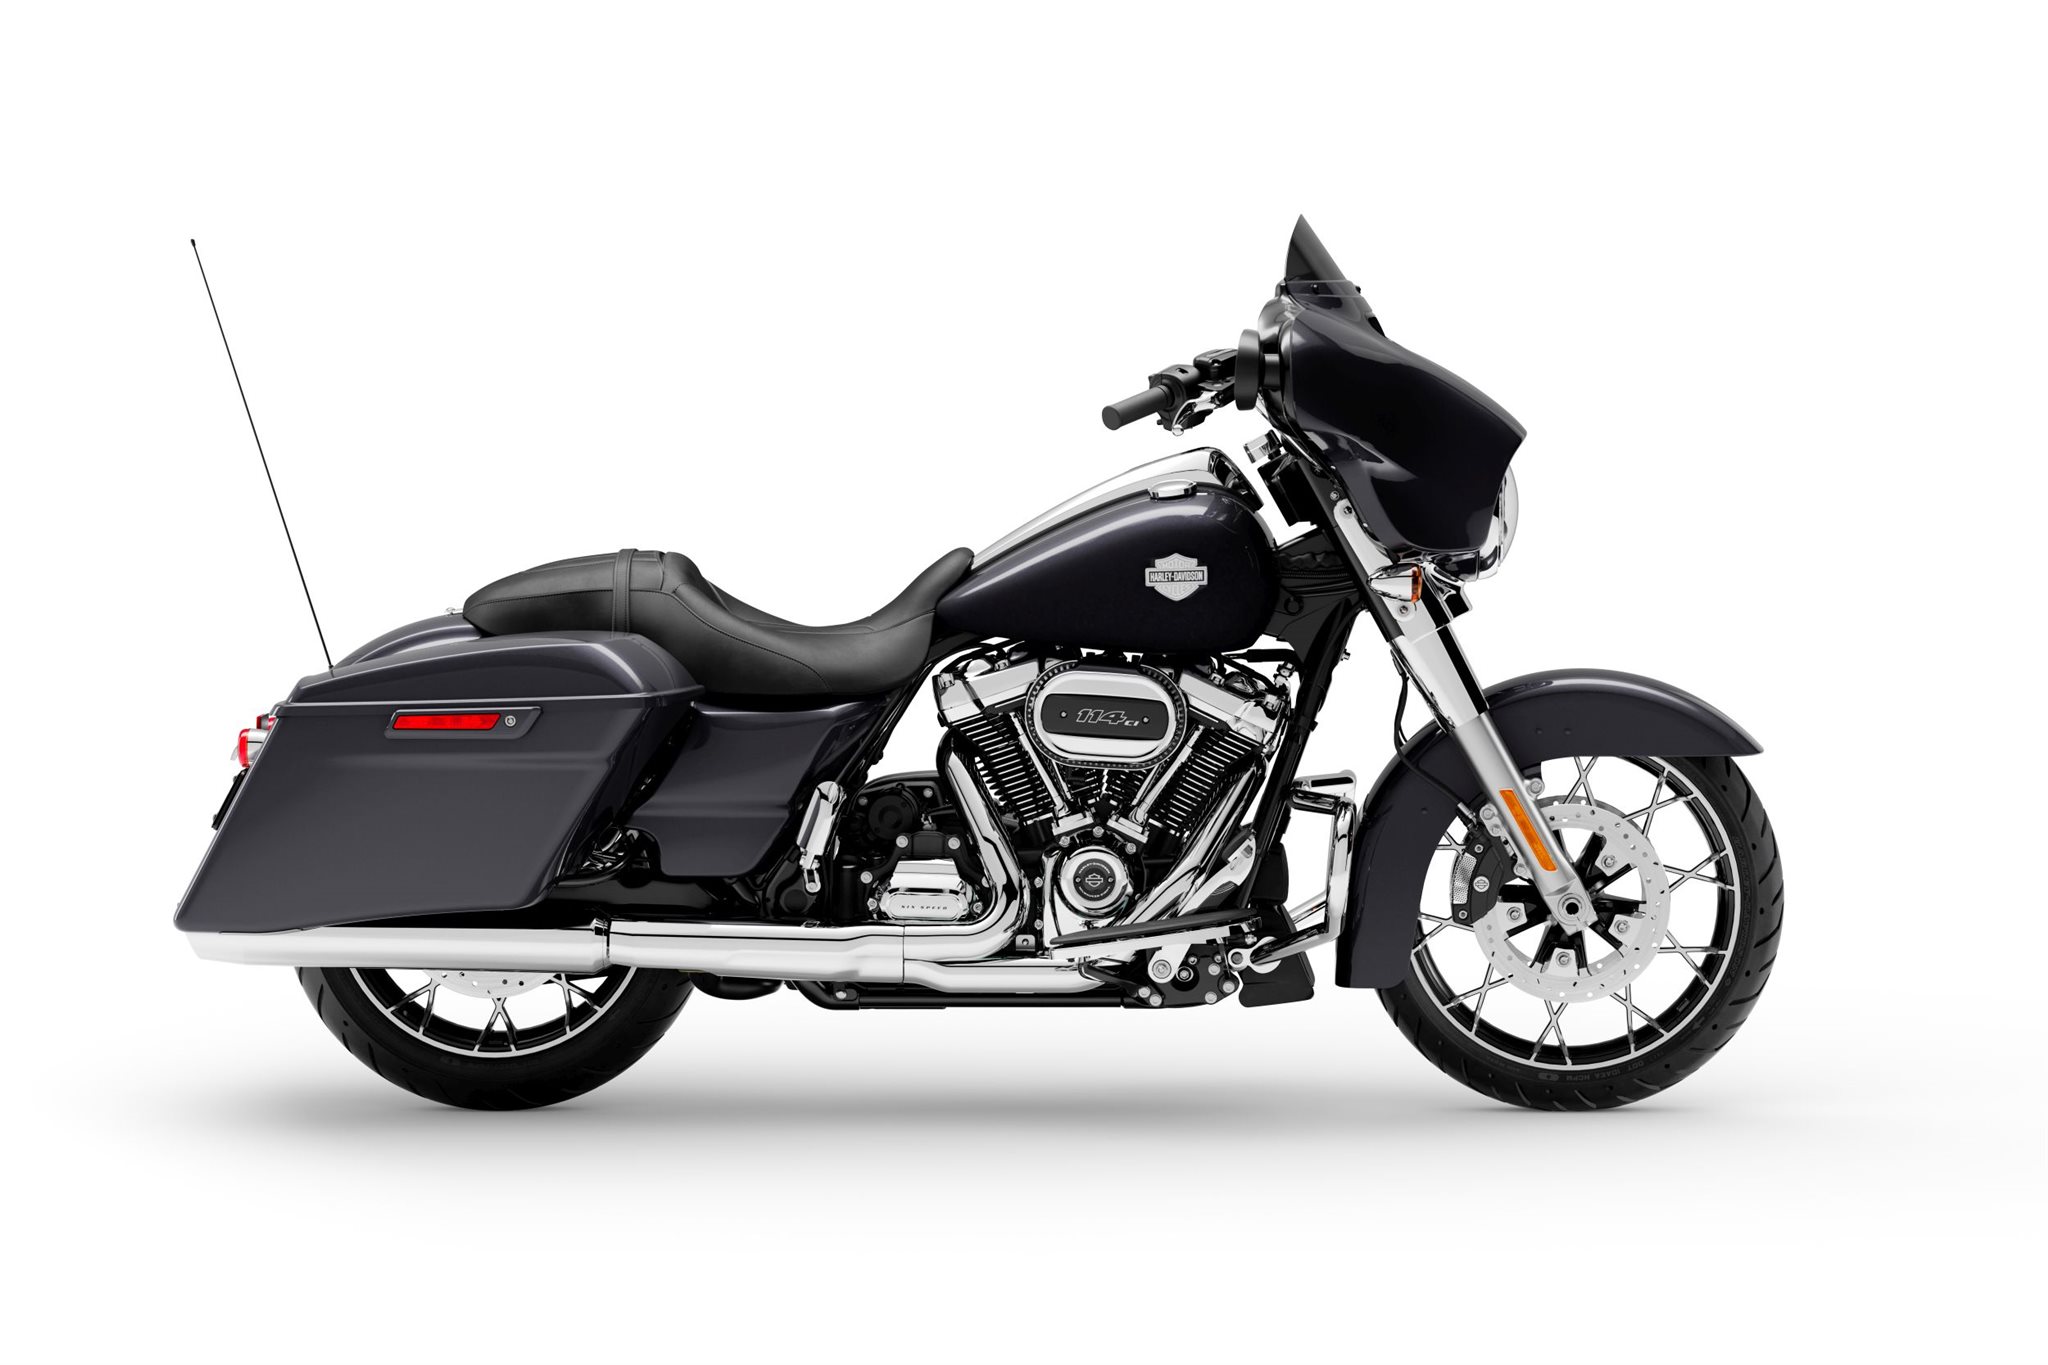 Motorrad Vergleich Harley Davidson Touring Street Glide Special Flhxs 2021 Vs Harley Davidson Touring Street Glide Special Flhxs 2019